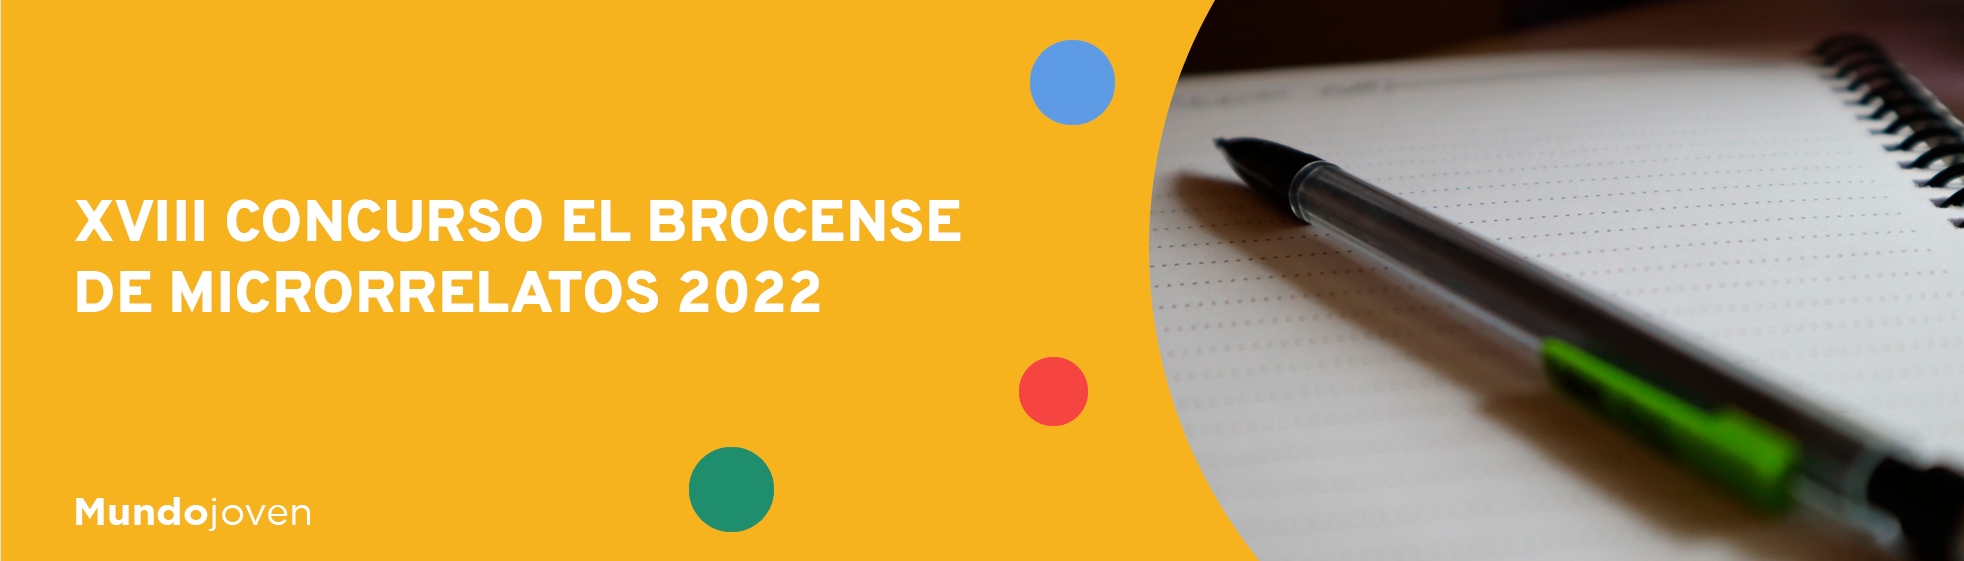 XVIII Concurso El Brocense de Microrrelatos 2022